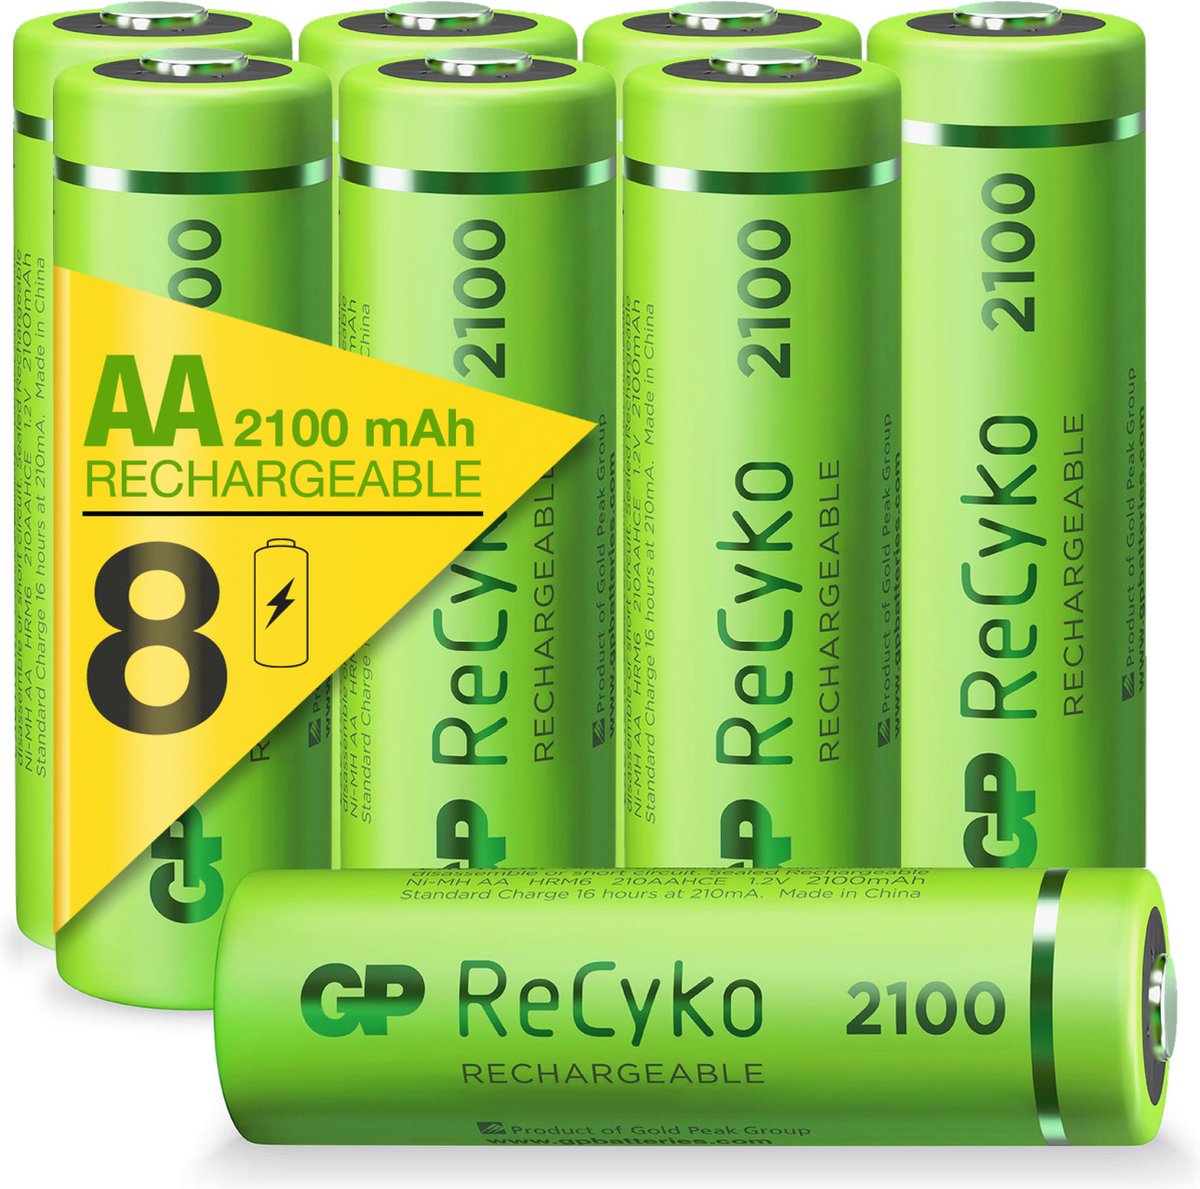 De controle krijgen Daar Doe herleven GP ReCyko Rechargeable AA batterijen - Oplaadbare batterijen AA (2100mAh) -  8 stuks | bol.com